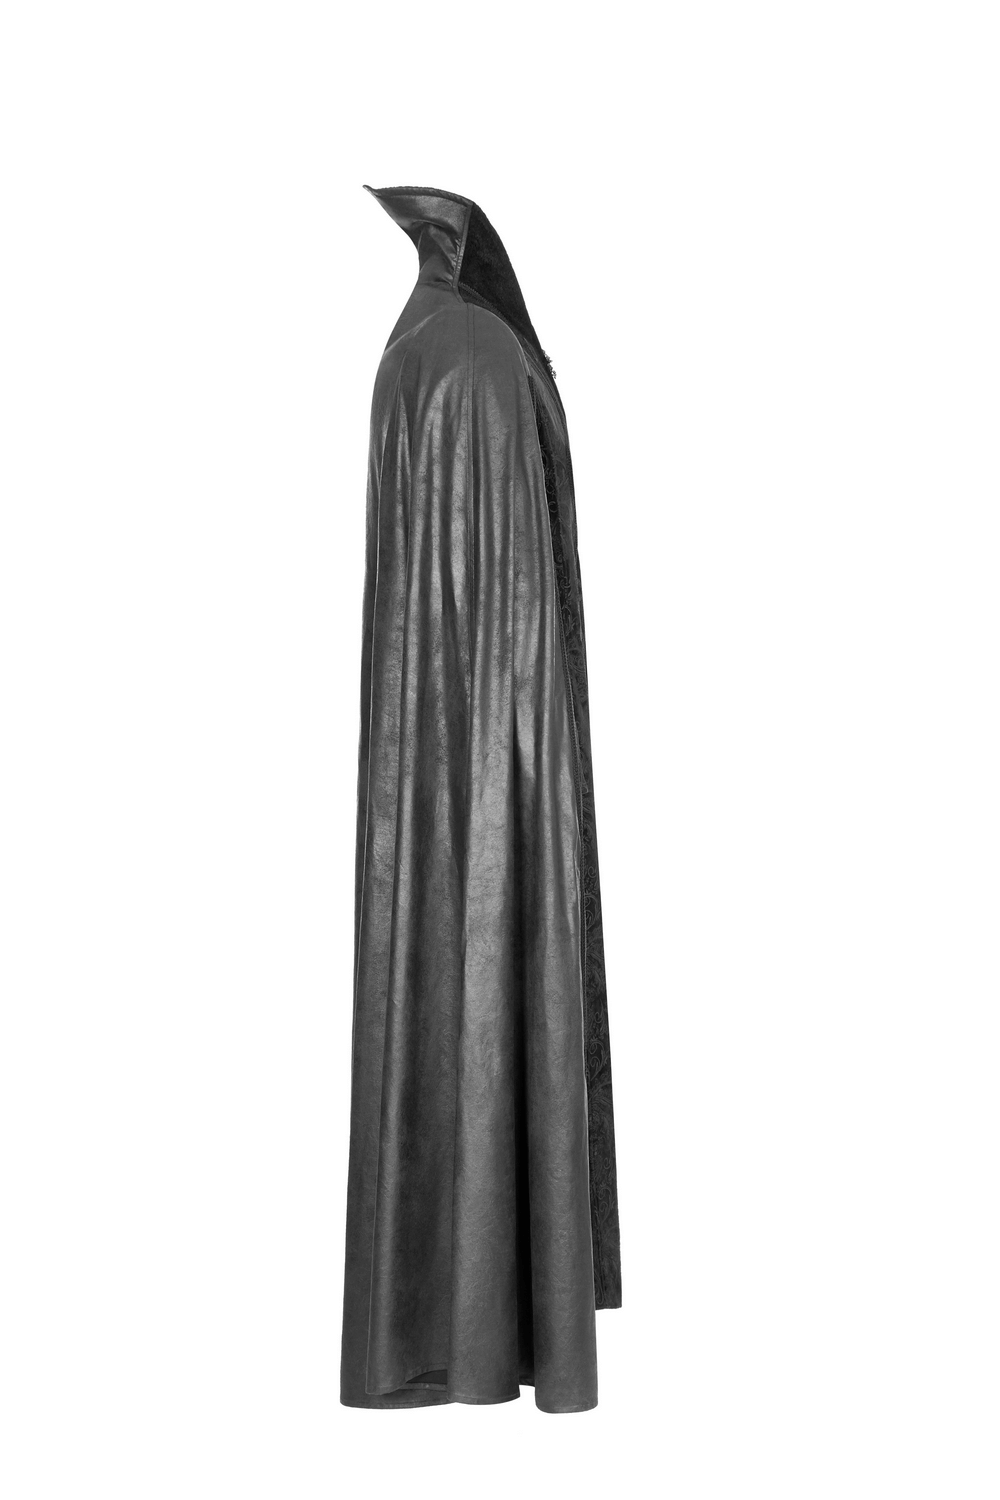 Elegant Gothic Velvet Cloak Coat with Embossed Detail - HARD'N'HEAVY